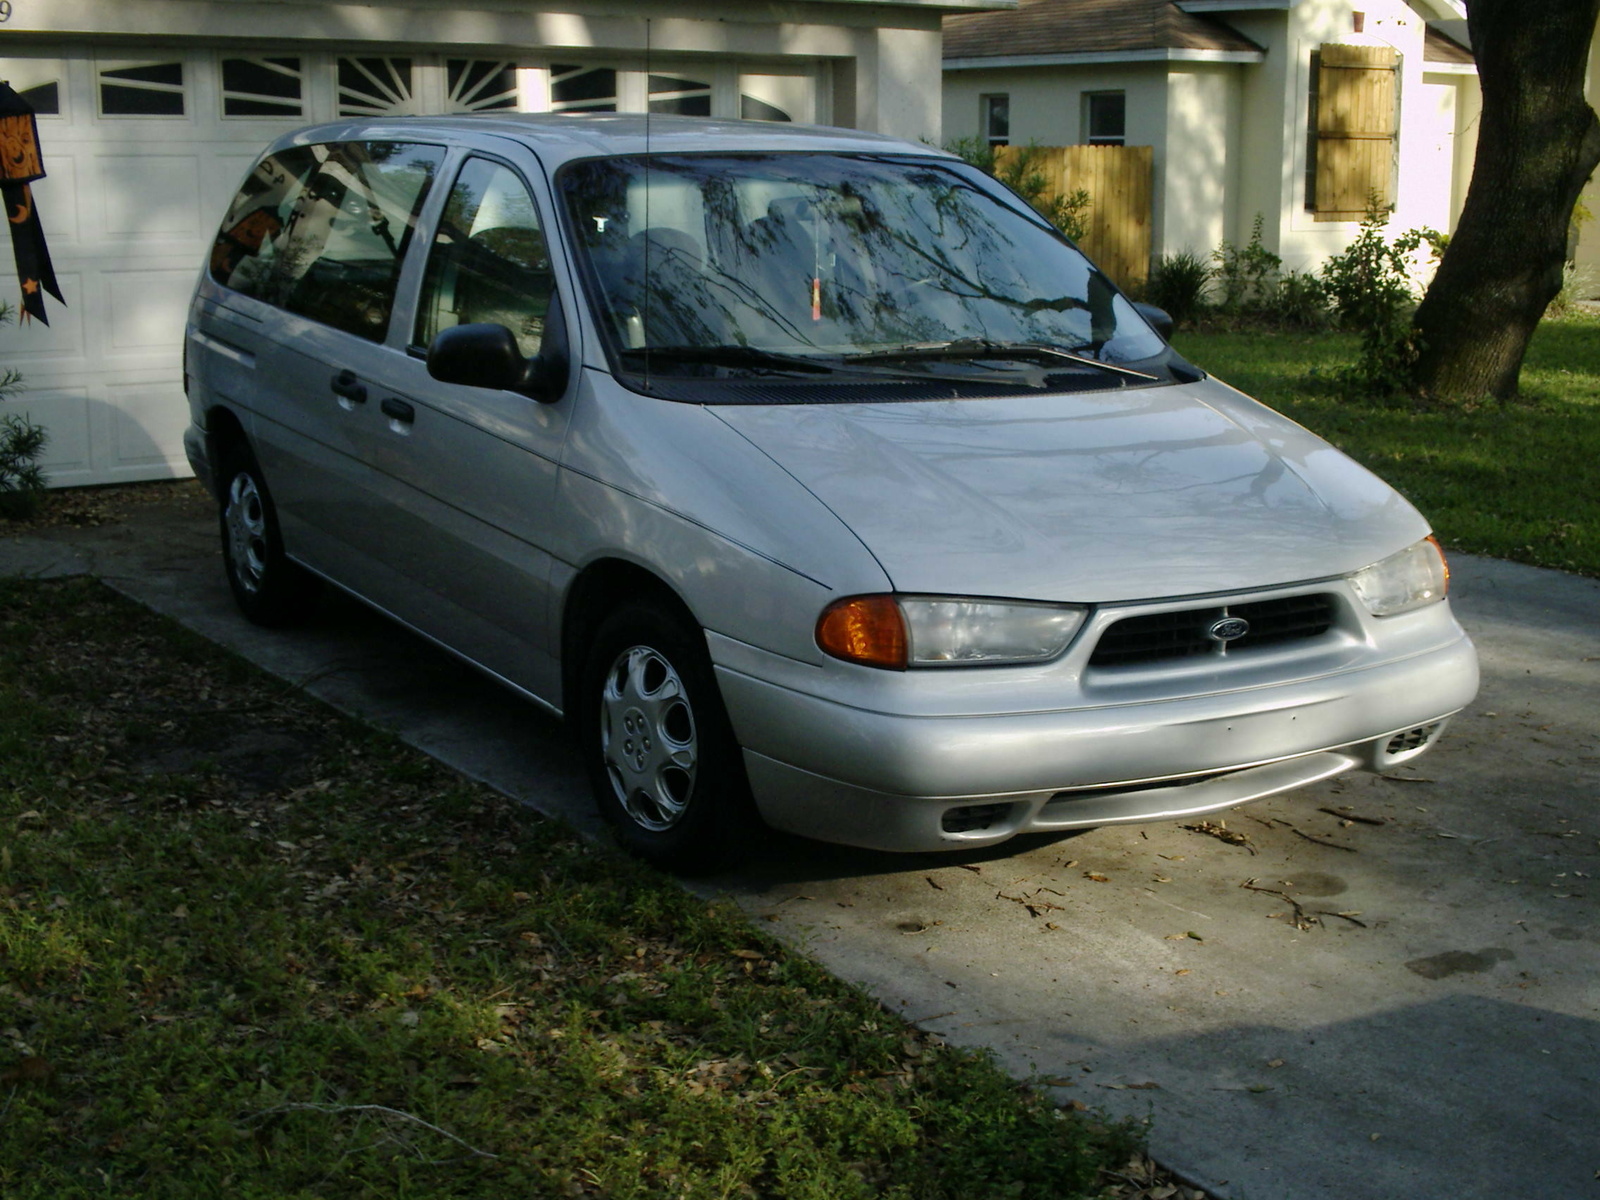 1996 Ford windstar lx minivan